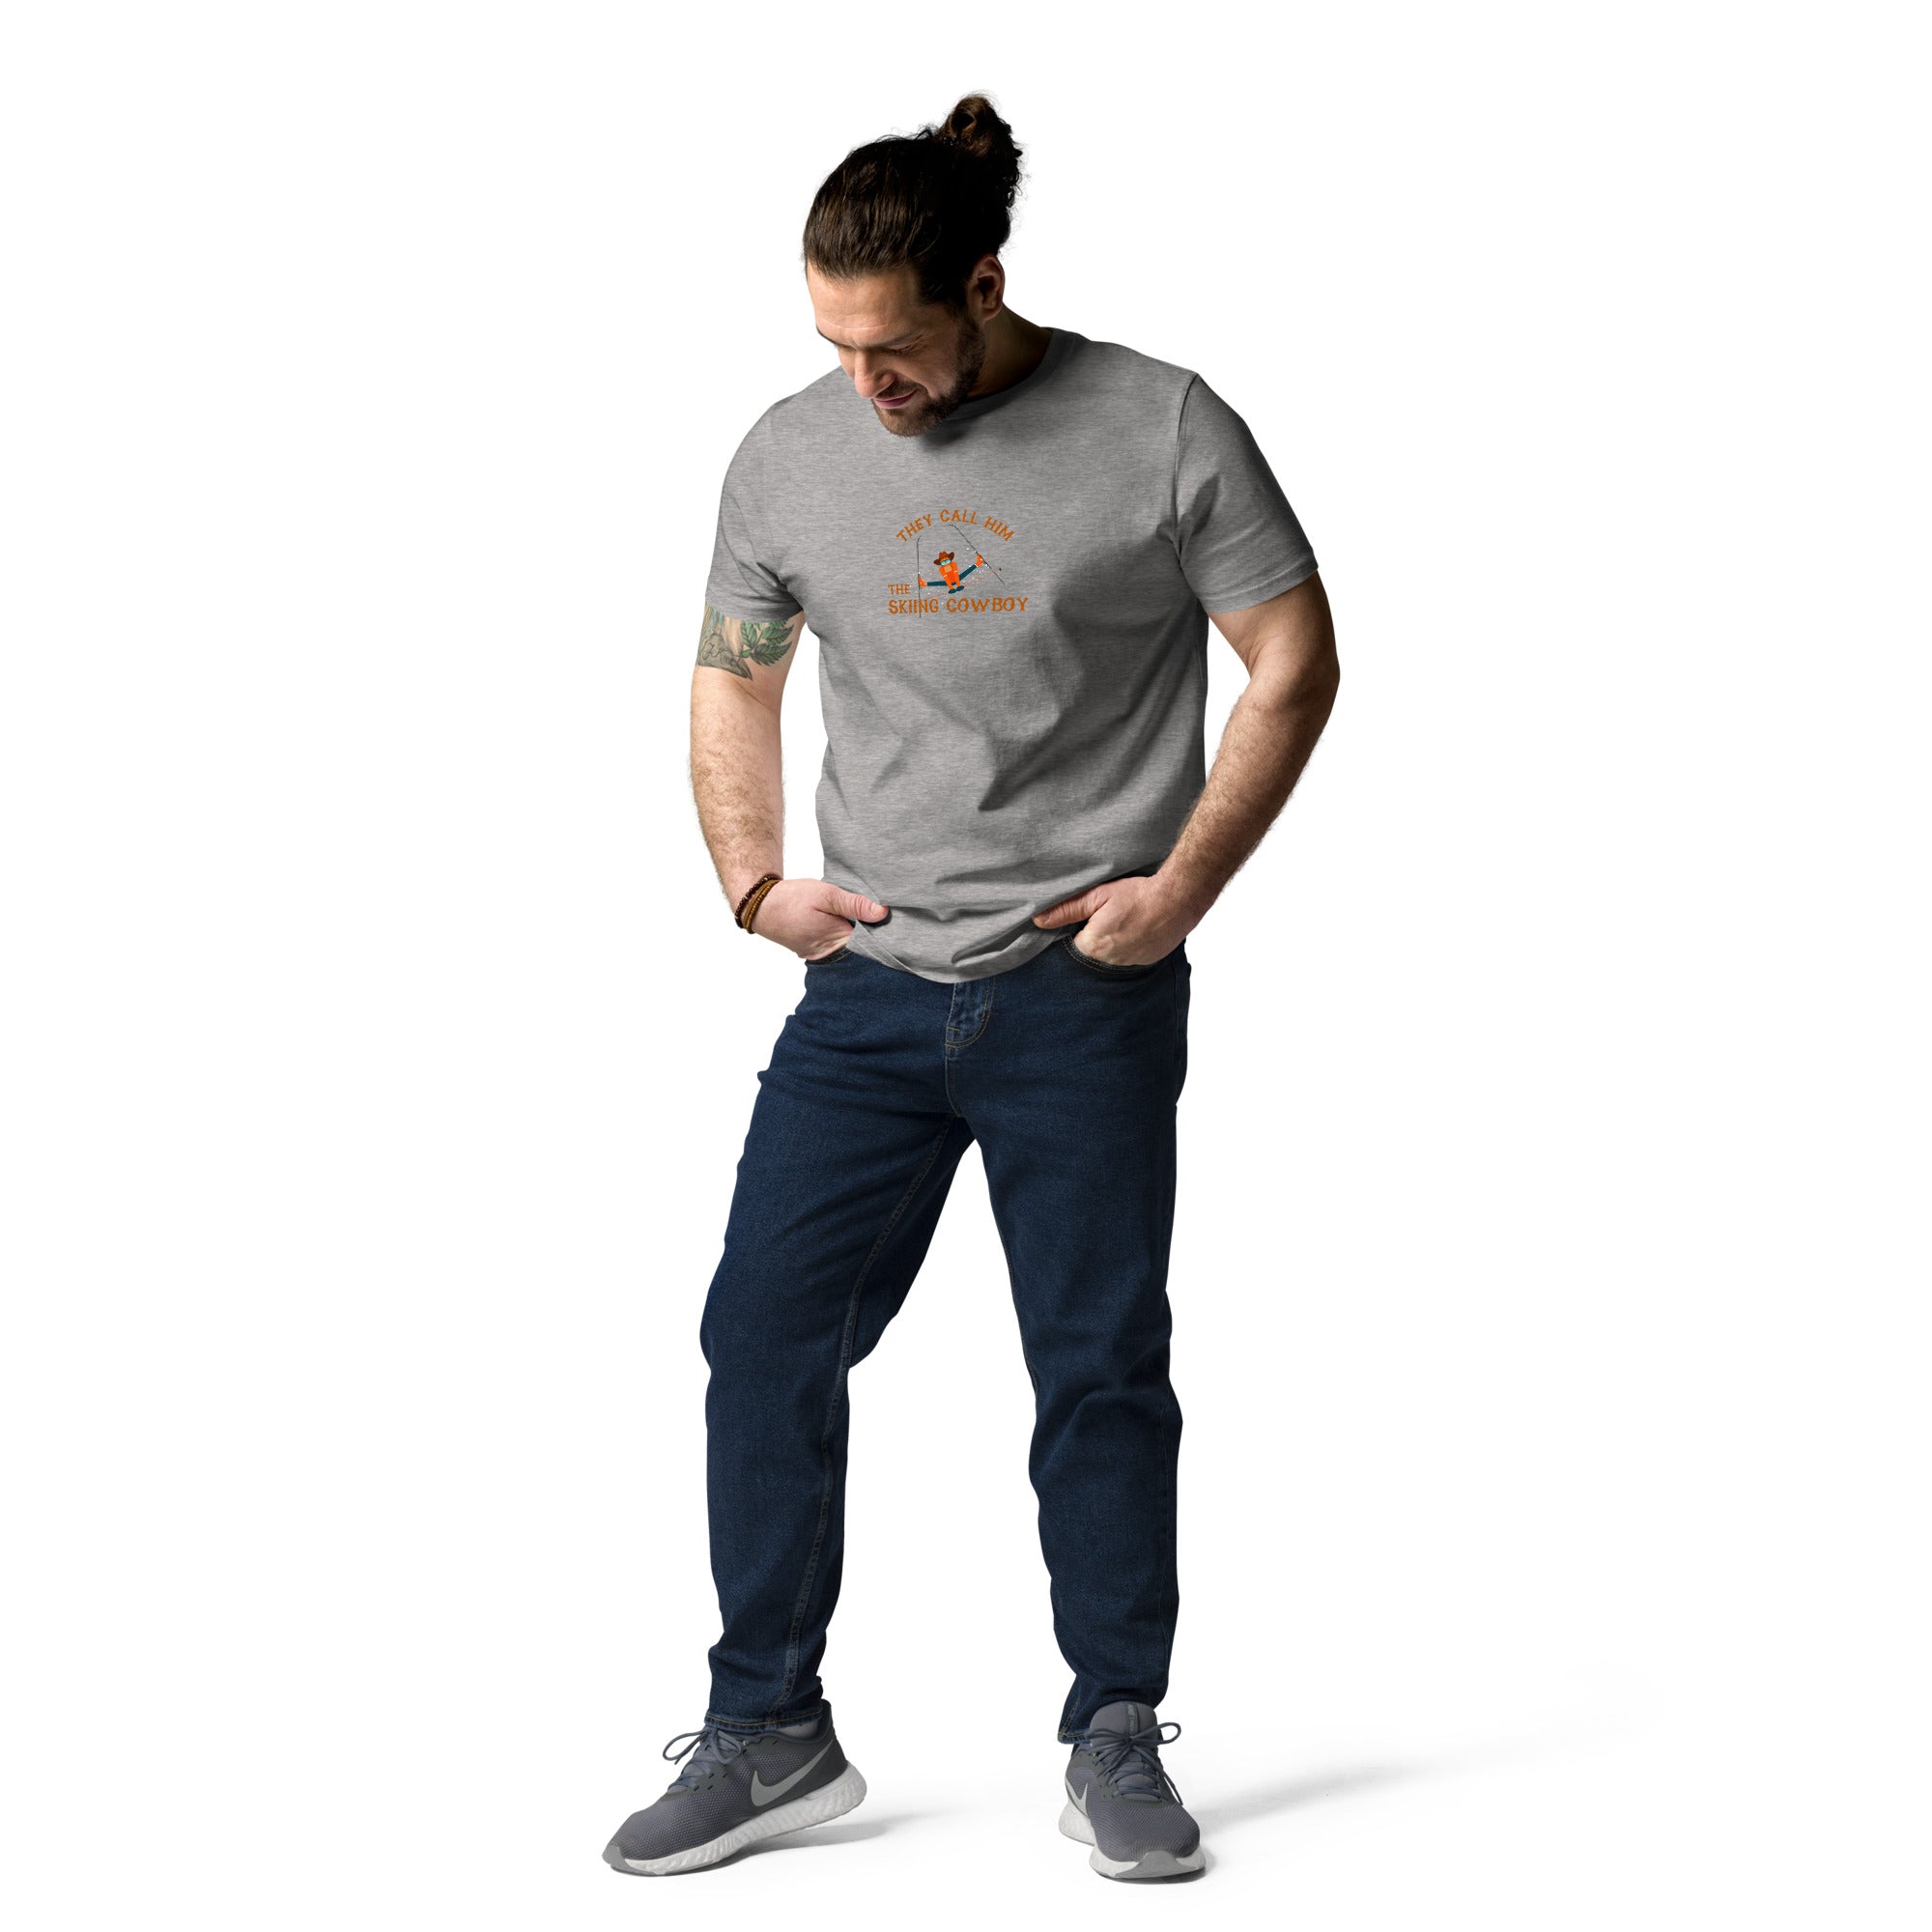 T-shirt unisexe en coton biologique Hot Dogger sur couleurs claires